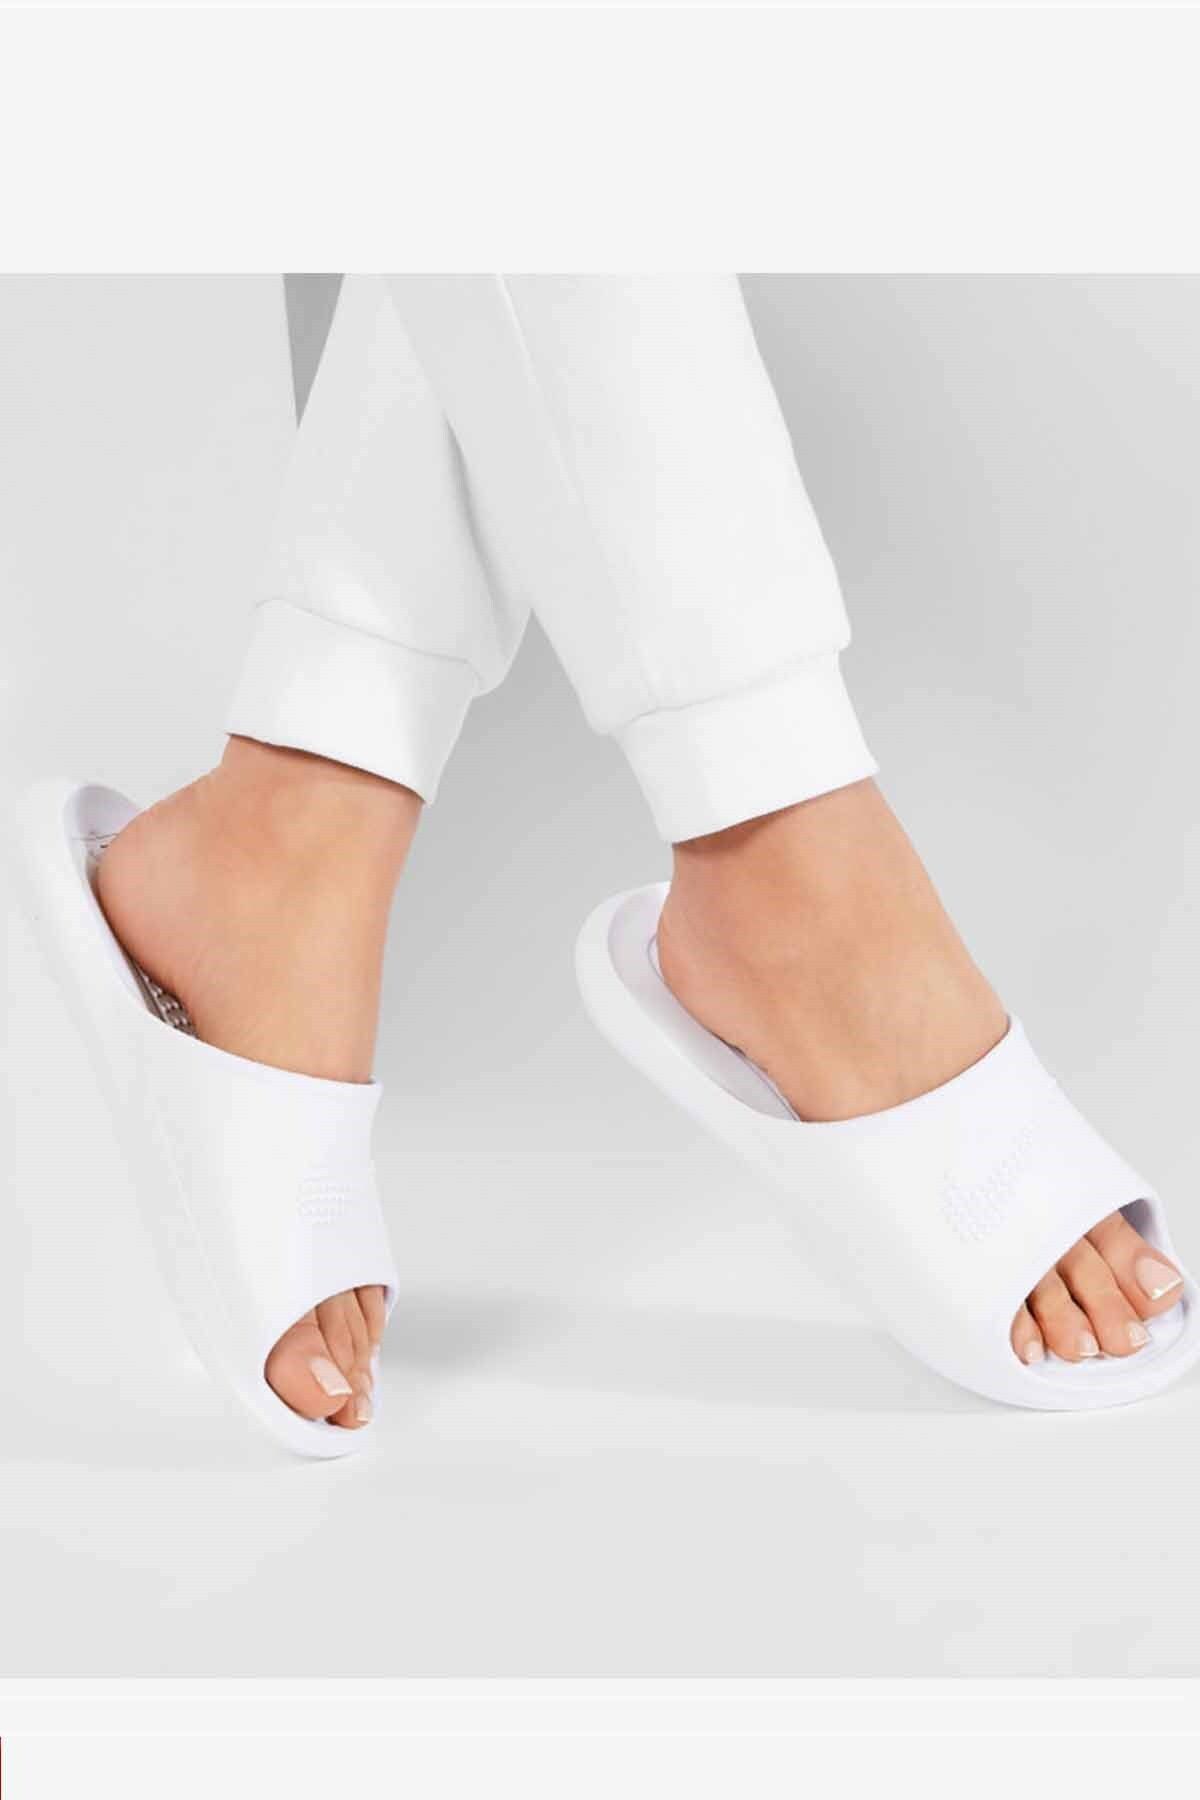 Nike Victori One Women's Shower Slide Kadın Terlik Ayakkabı Cz7836-100-beyaz